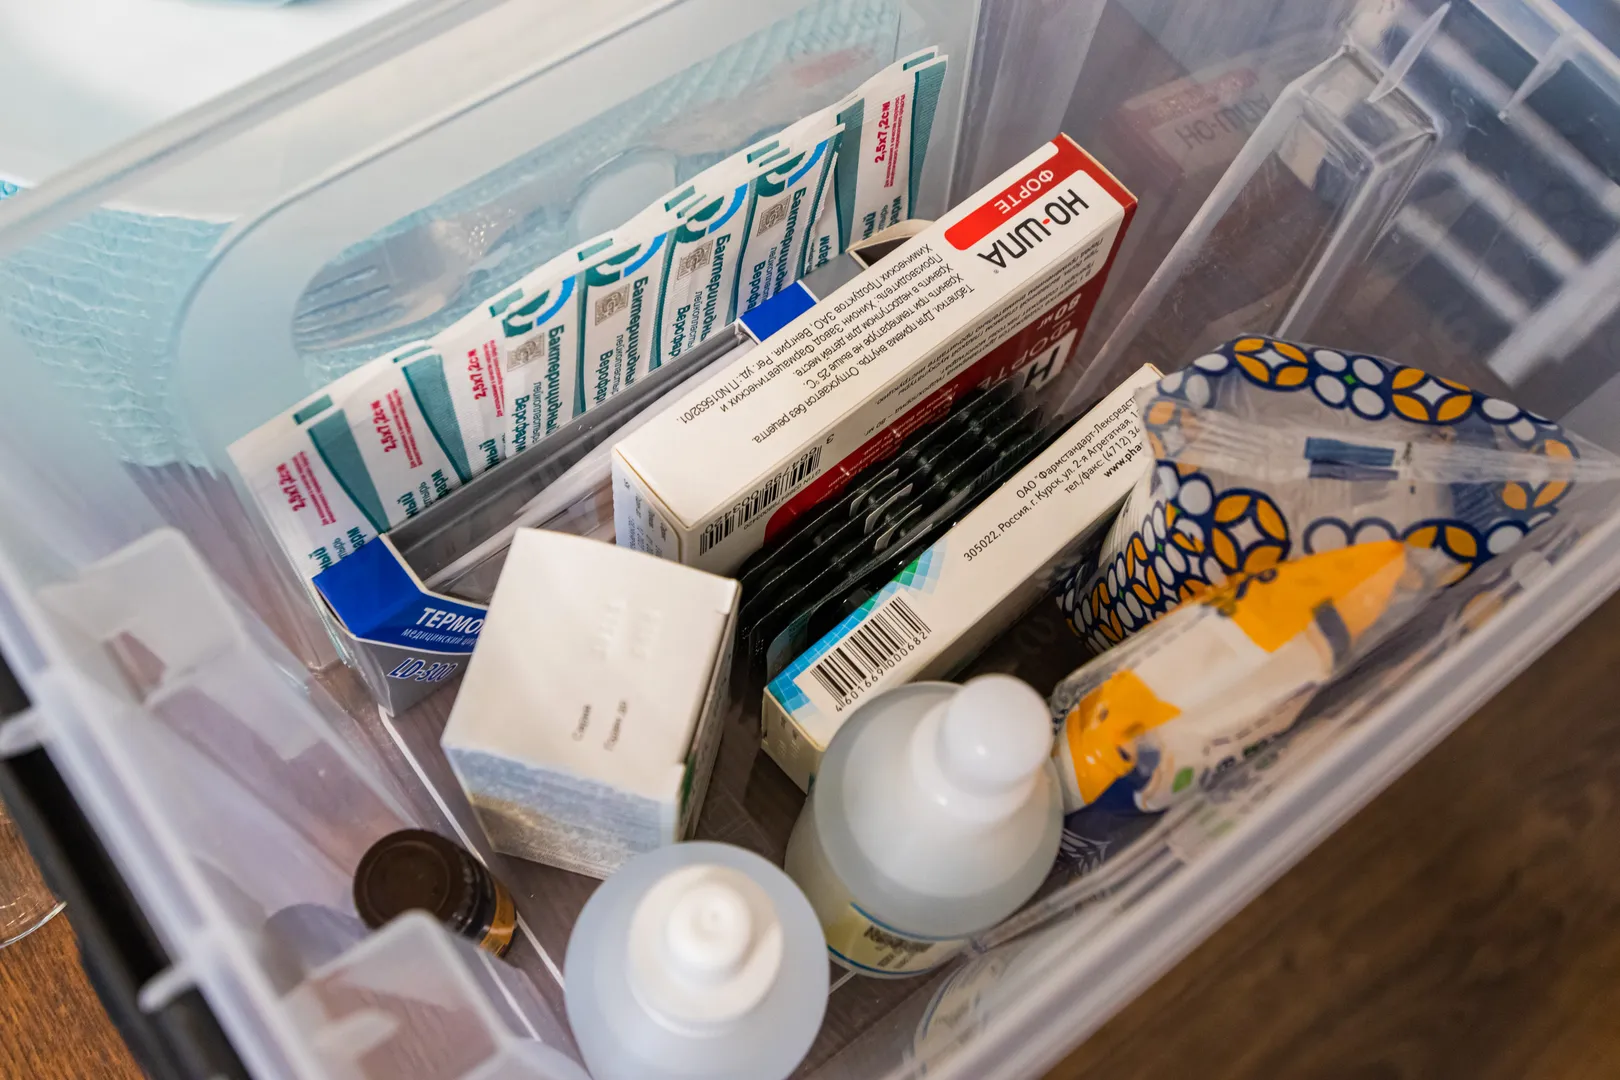 В квартире имеется аптечка с базовым набором лекарств для оказания первой помощи и облегчения состояния.  А также швейный набор.